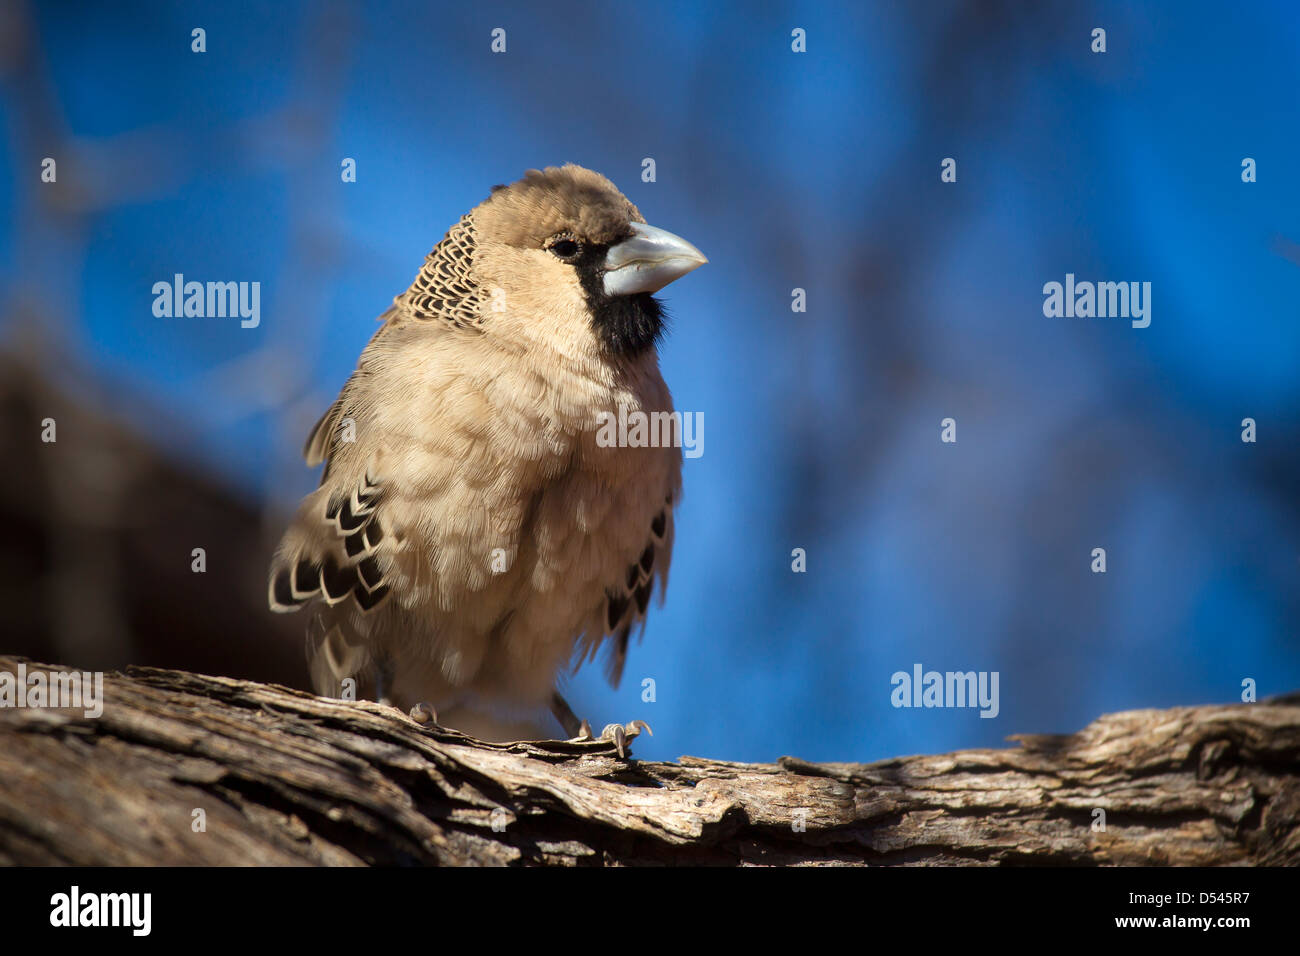 Ritratto di un tessitore socievole uccello in un momento contemplativo contro un azzurro sfondo sfocato. Foto Stock